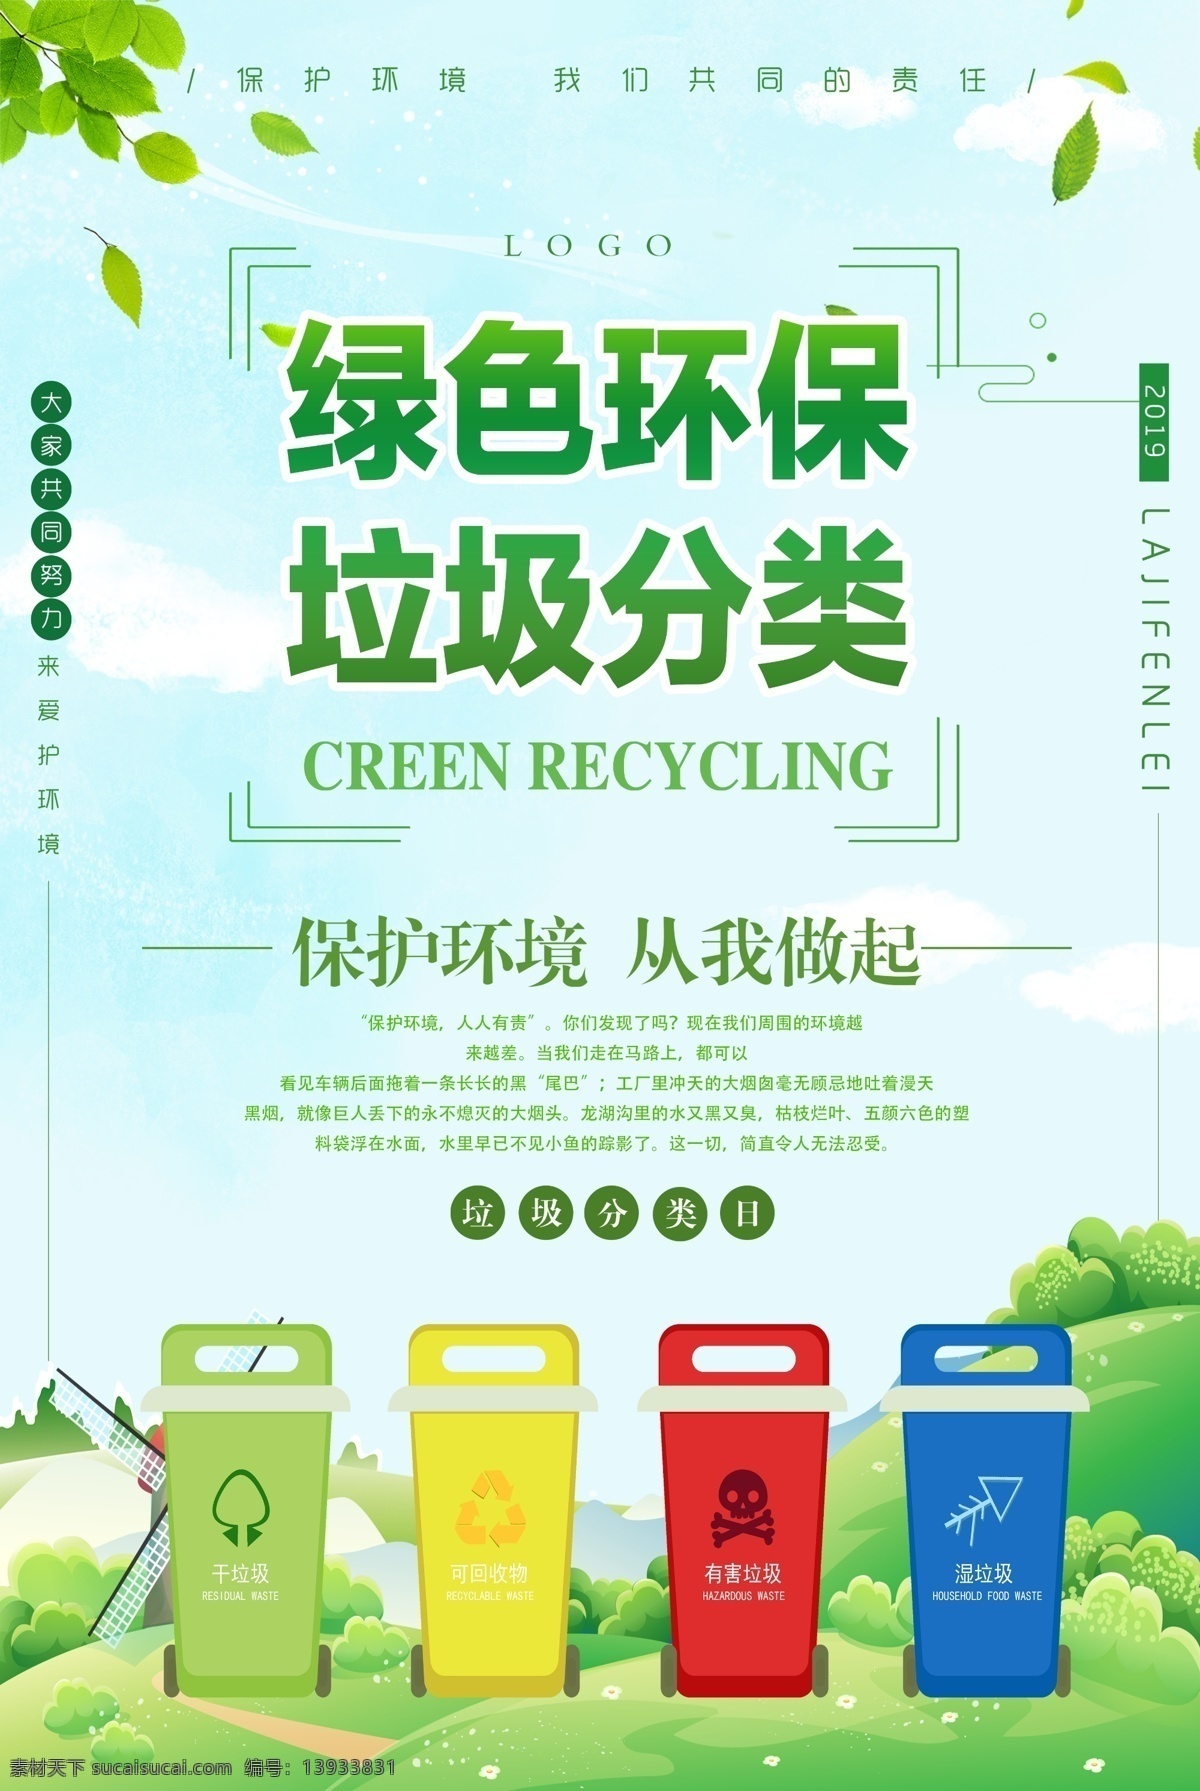 绿色环保 垃圾分类 分类 垃圾 环保 绿色 公益海报 公益广告 公益 海报 文明城市 创文